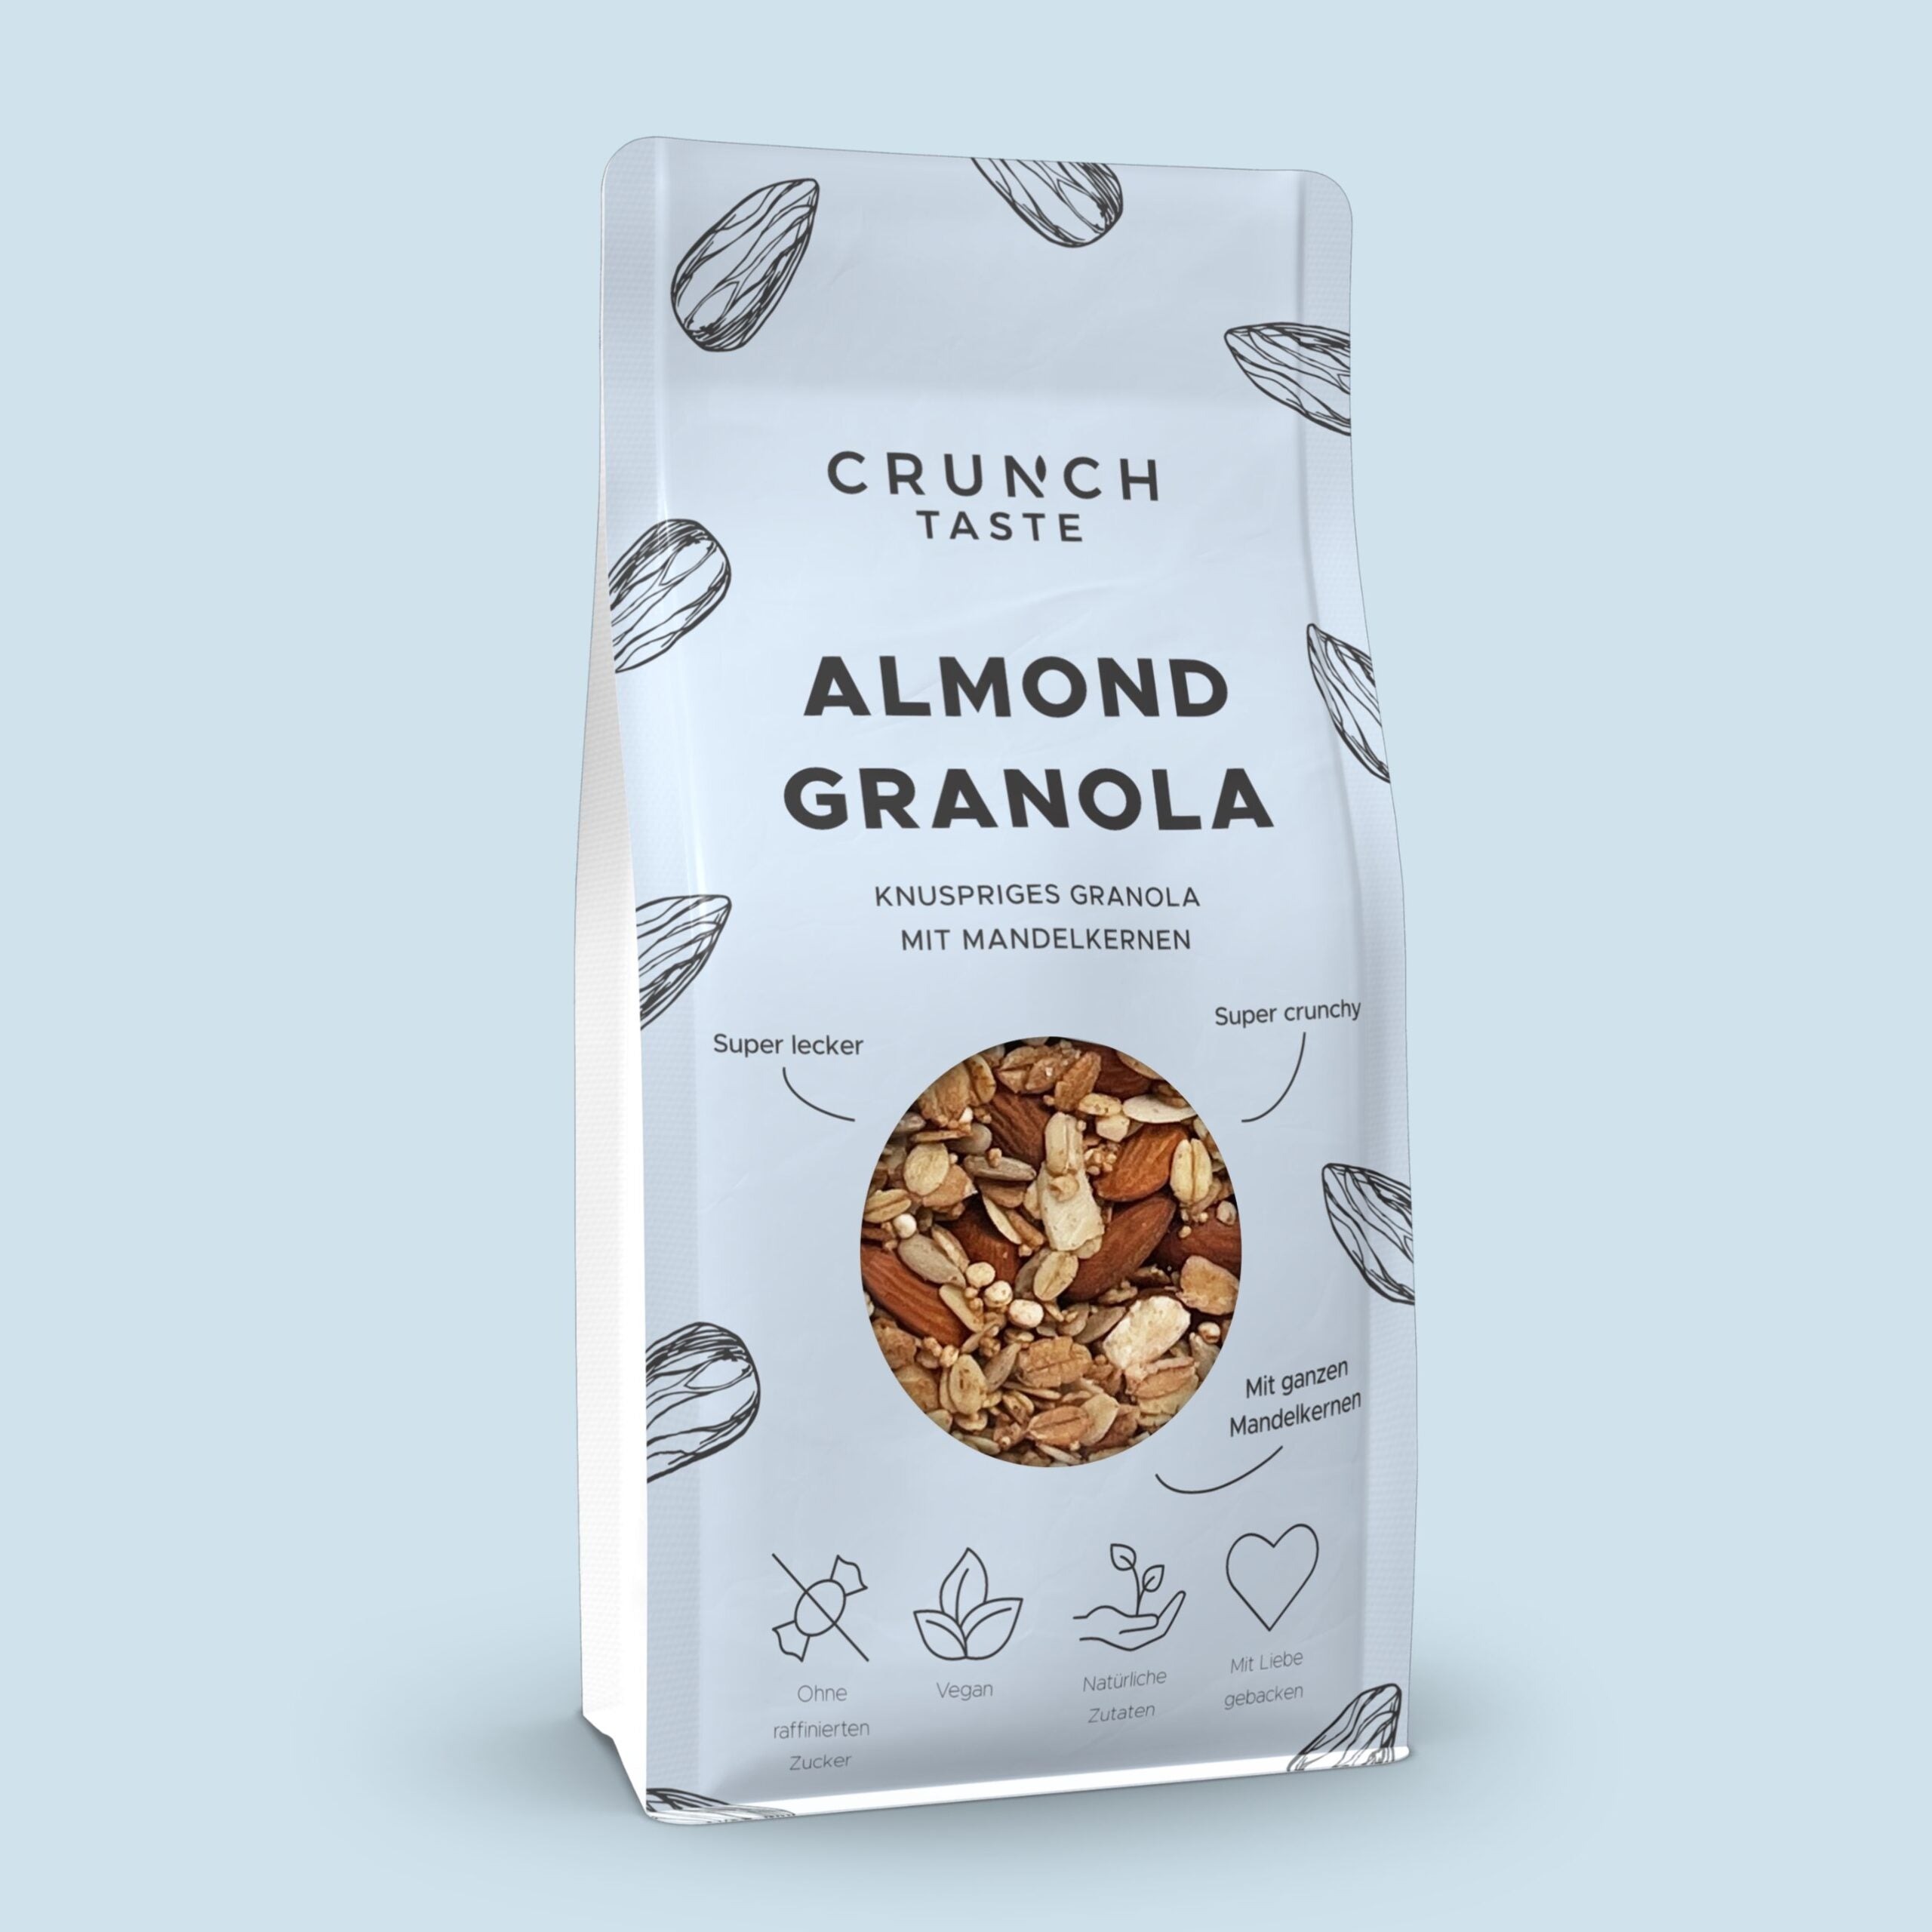 Crunch Taste ALMOND GRANOLA | Granola mit Mandelkernen | 250g